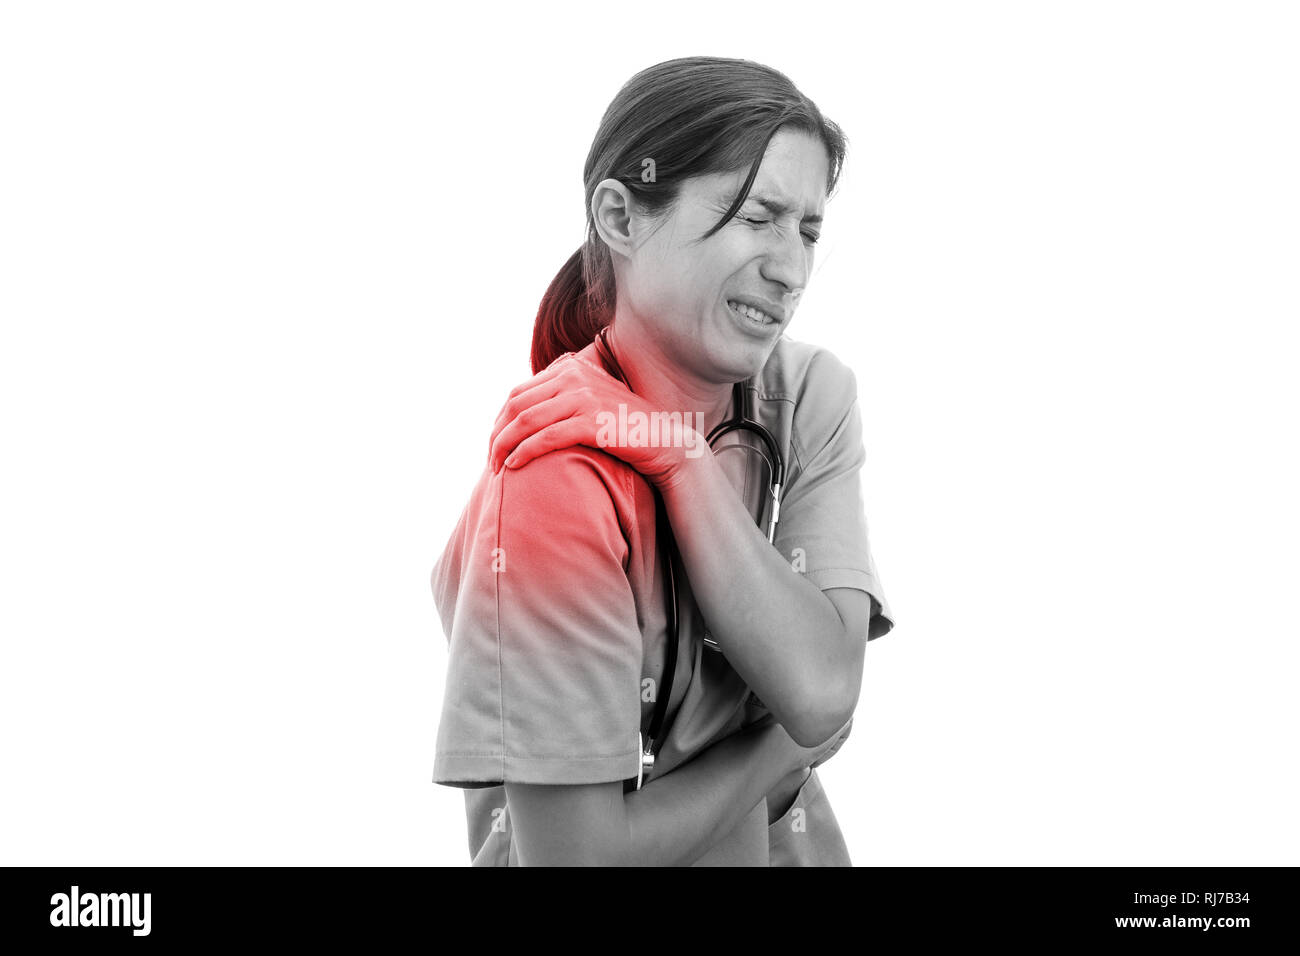 Schwarz-weiß Bild von Krankenschwester mit Schmerzen Schulter rot gefärbt als körperliche Anstrengung belasteten Begriff Stockfoto